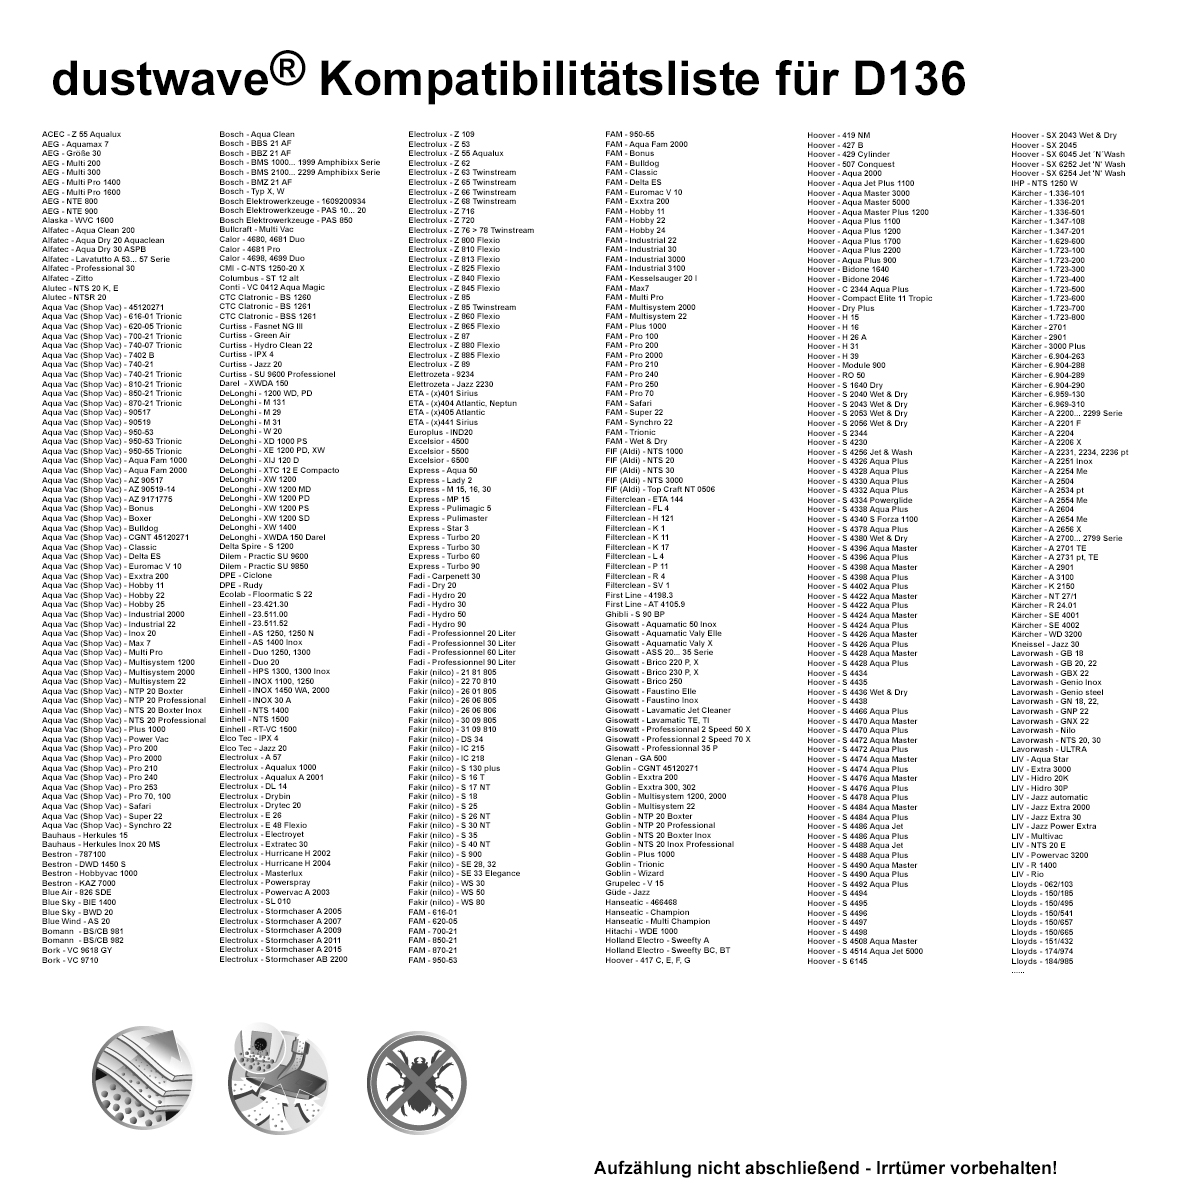 20x dustwave® Vlies Staubsaugerbeutel (ca. 20 Liter) passend für Nilfisk-Alto Aero 20-01, 20-11, 20-21, 25-01, 25-11, 25-21 / Markenfilterbeutel - Made in Germany